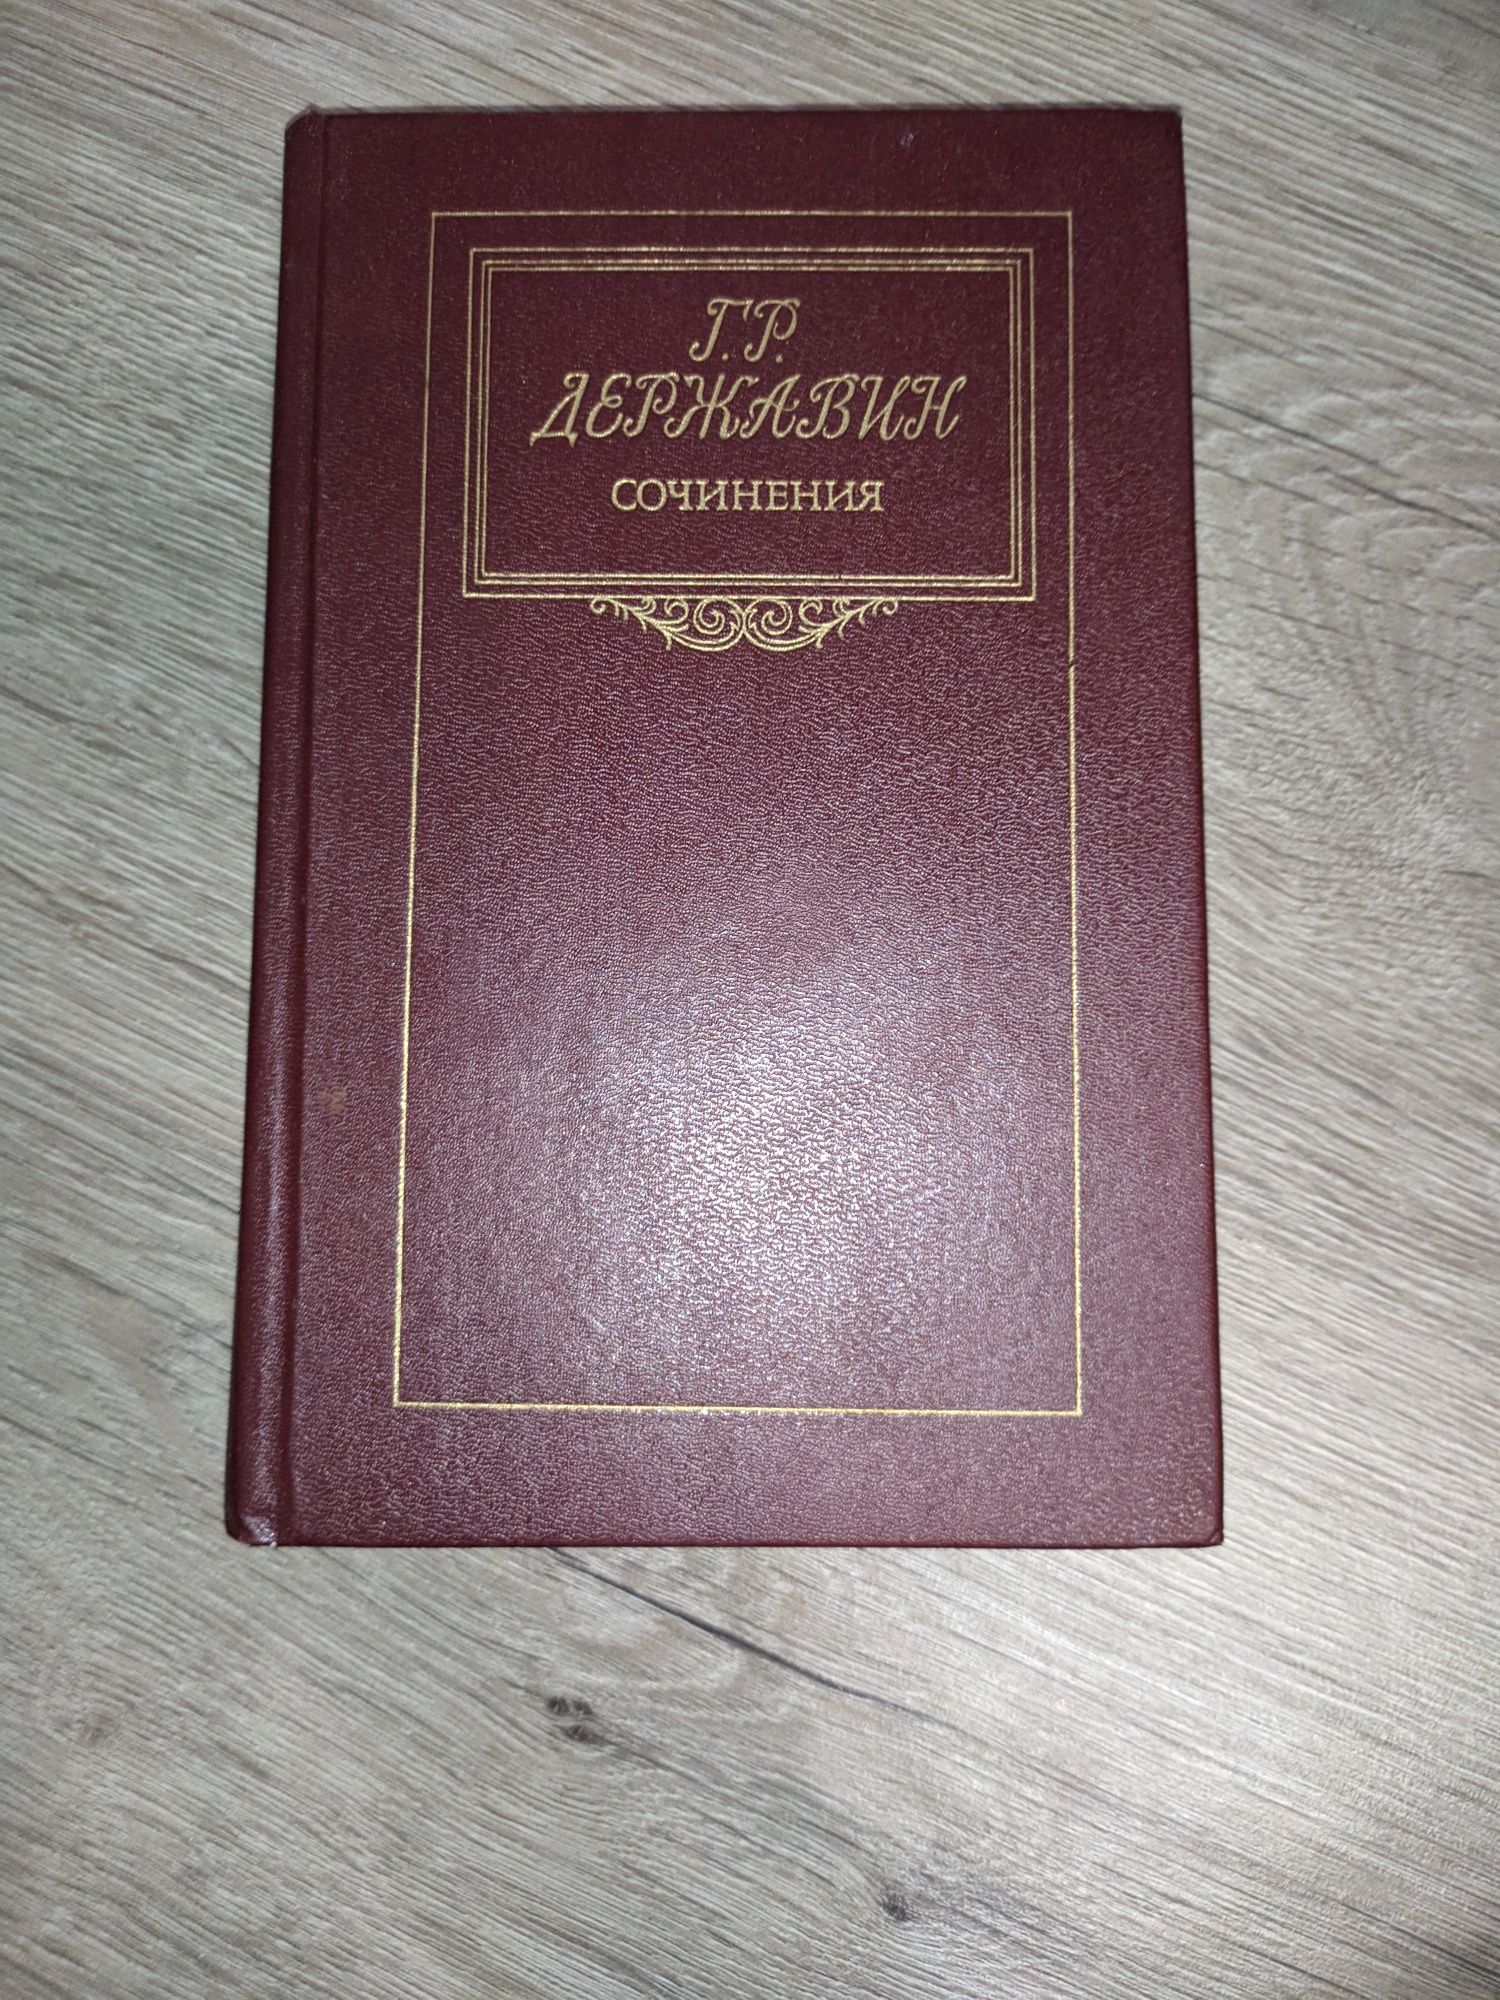 Книга Г.Р.Державин "Сочинения"